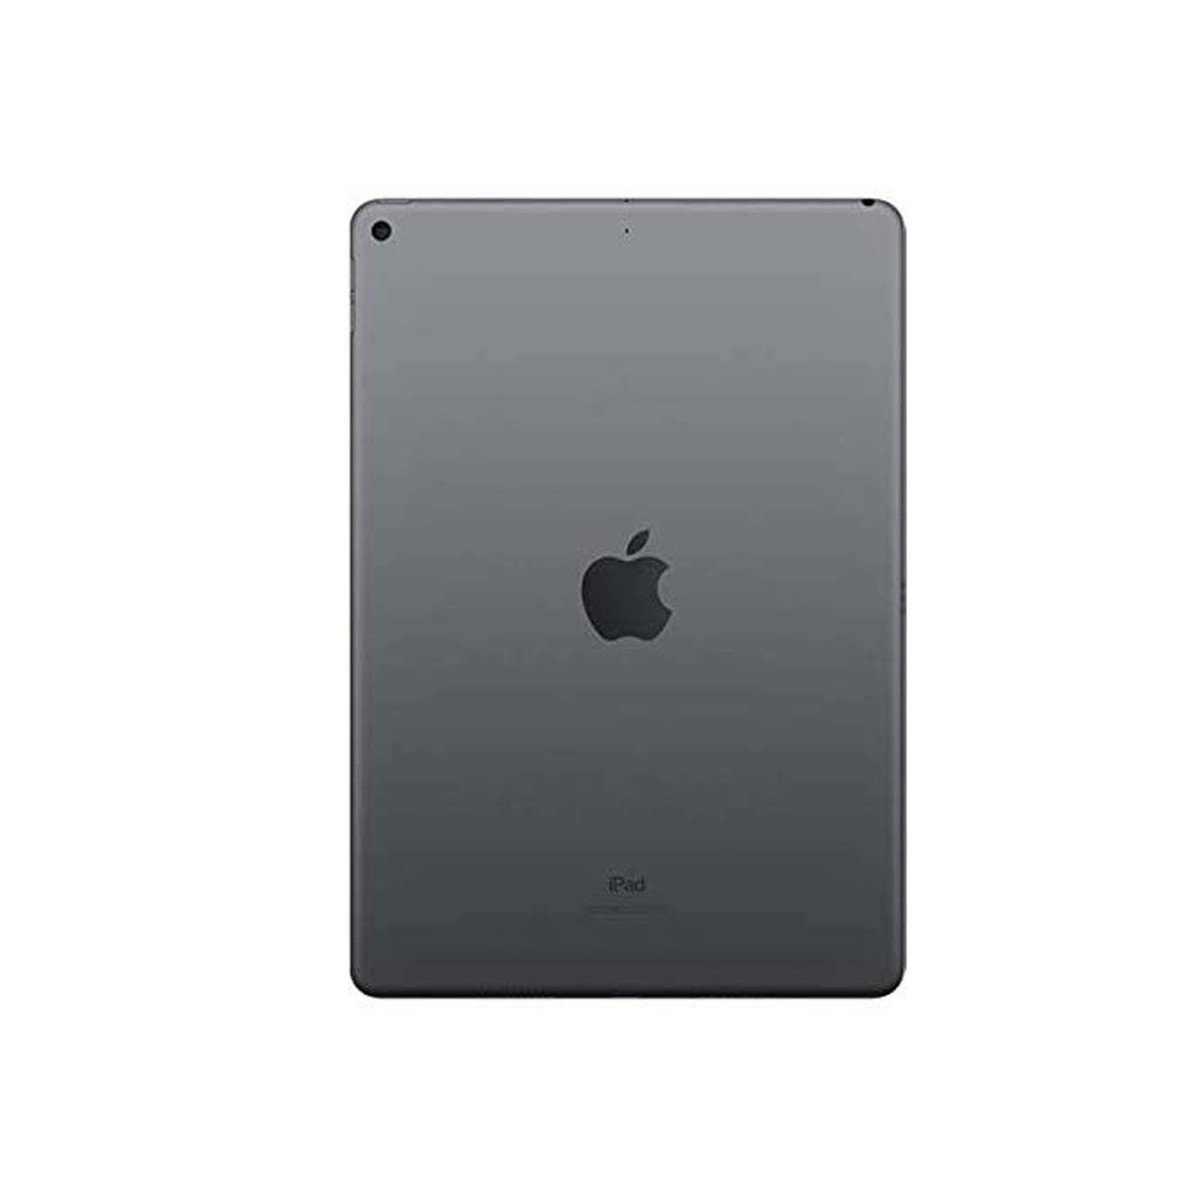 Apple iPad Air (2019) - iOS (Wi-Fi, 256GB) 10.5inch Space Grey